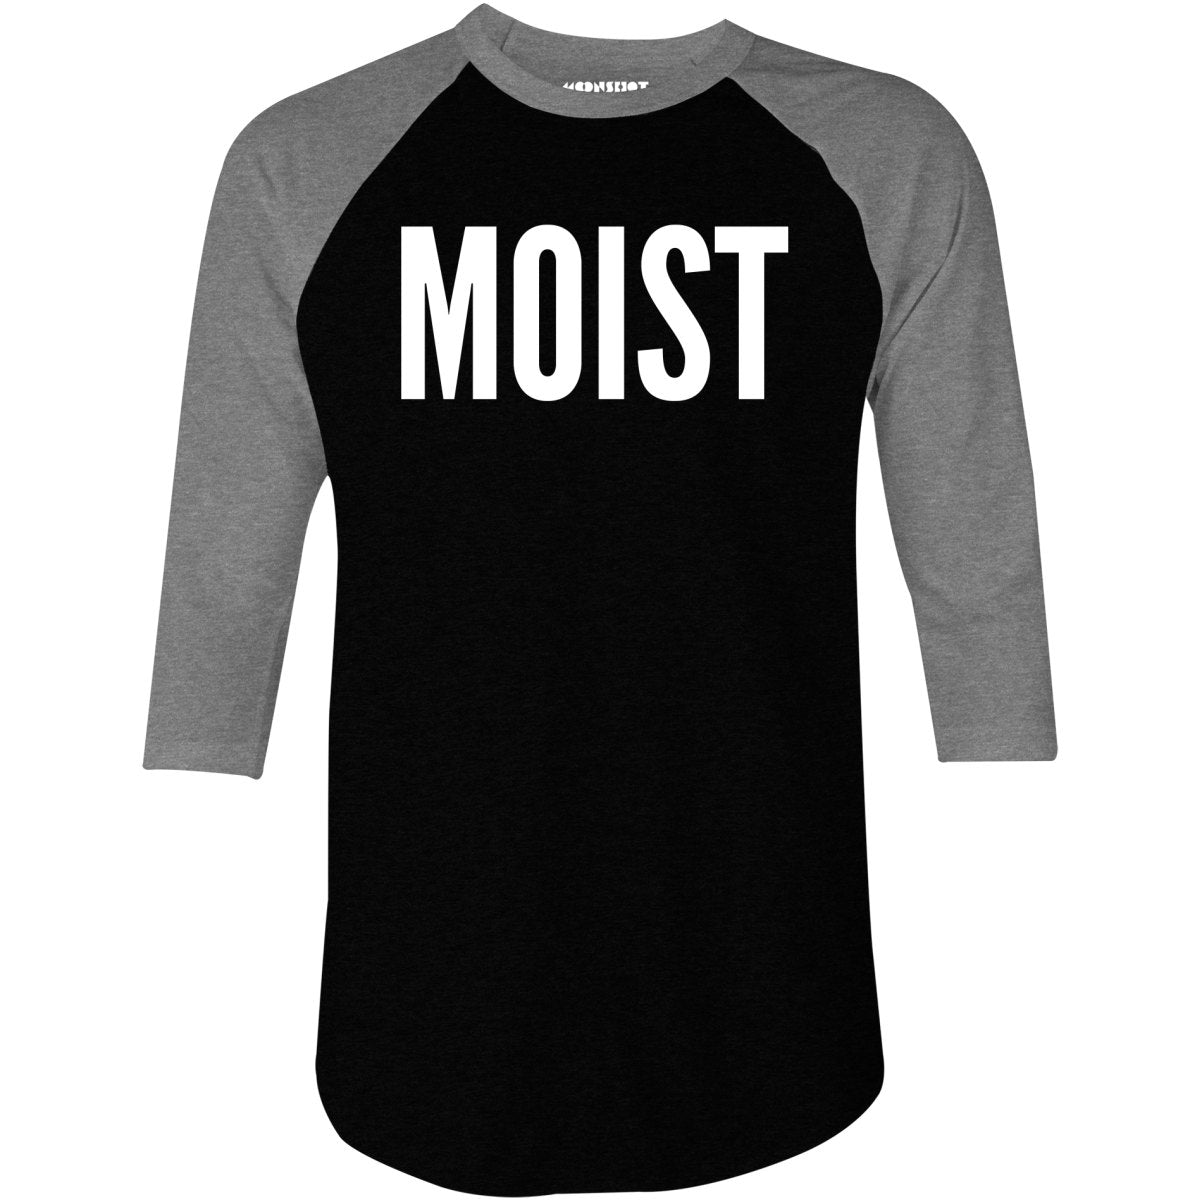 Moist - 3/4 Sleeve Raglan T-Shirt